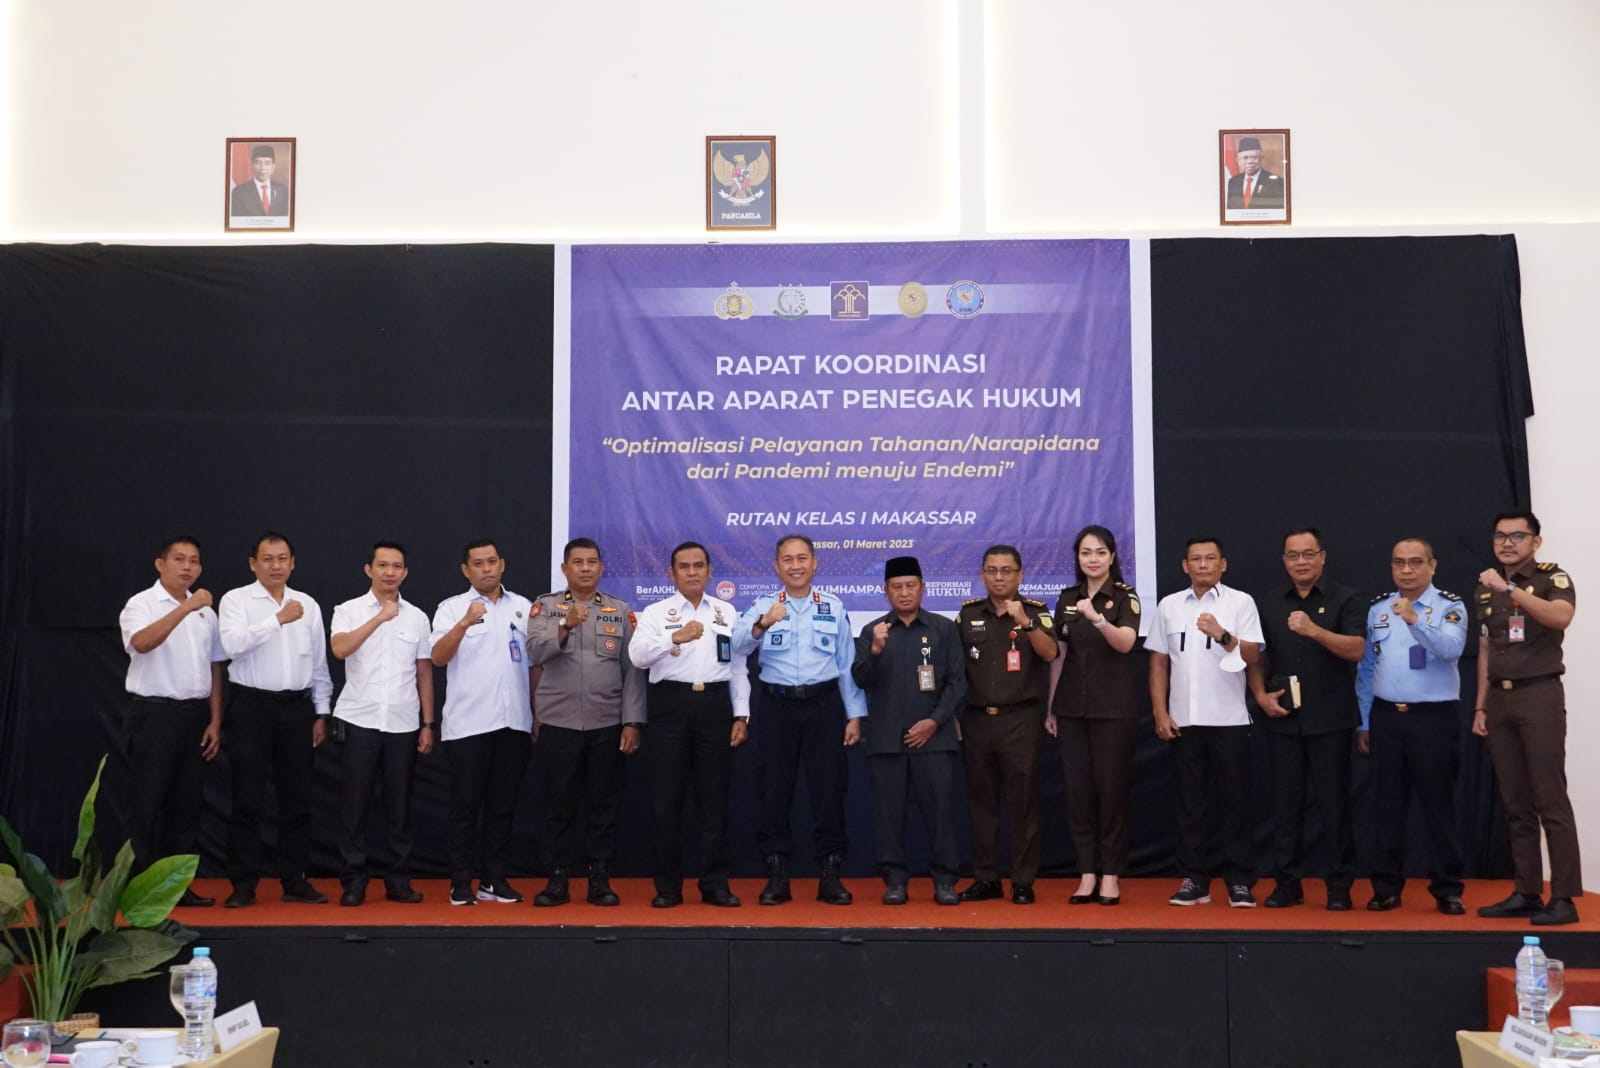 Rutan Kelas I Makassar gelar Rakor bersama Aparat Penegak Hukum (APH) terkait. (Foto:ist)